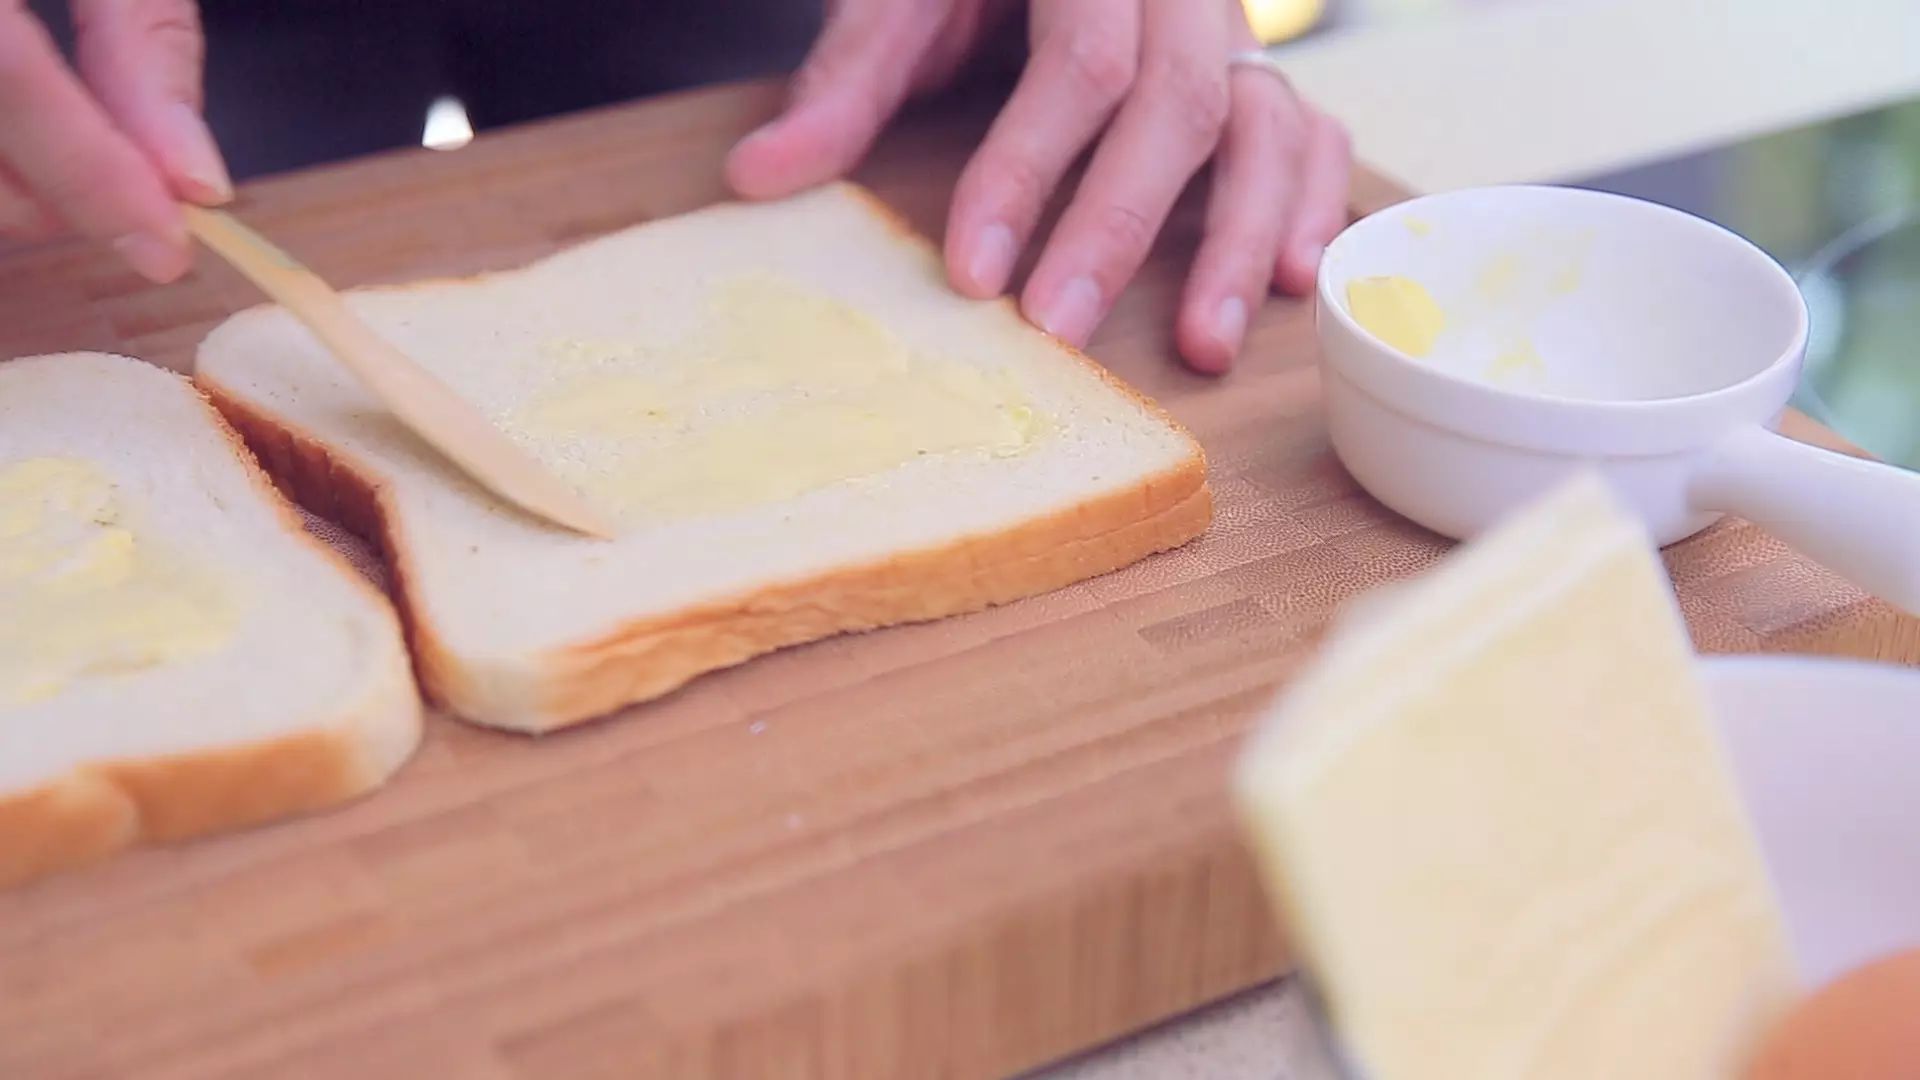 先把面包涂上黄油.